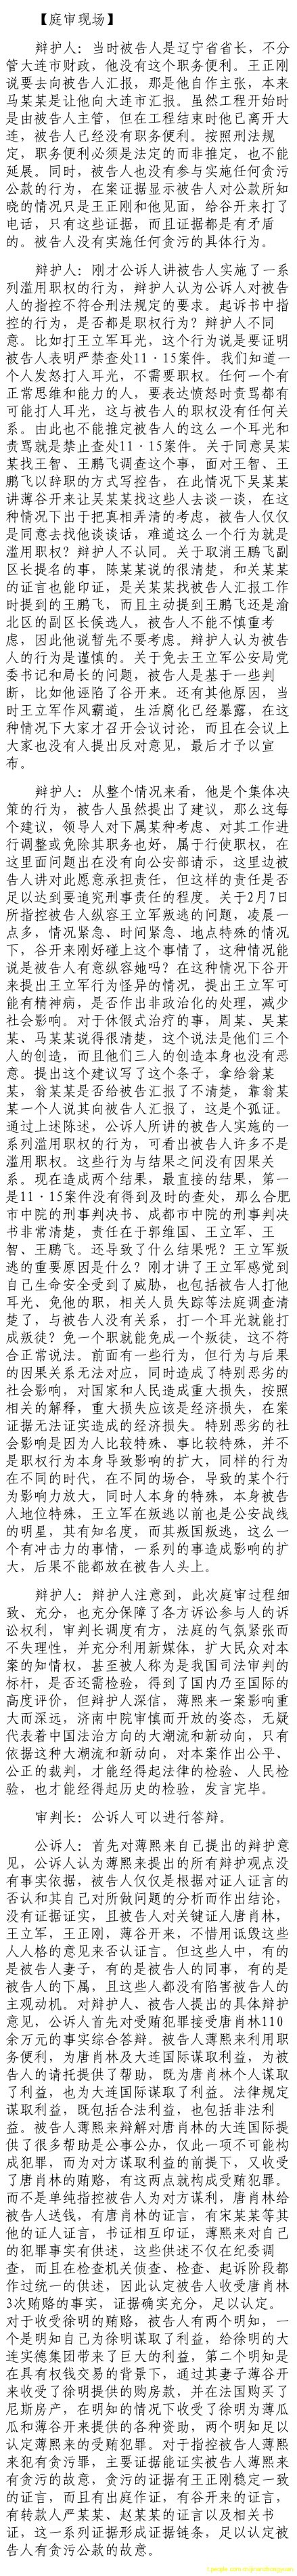 济南市中级法院官方微博公布的8月26日庭审现场记录（6）